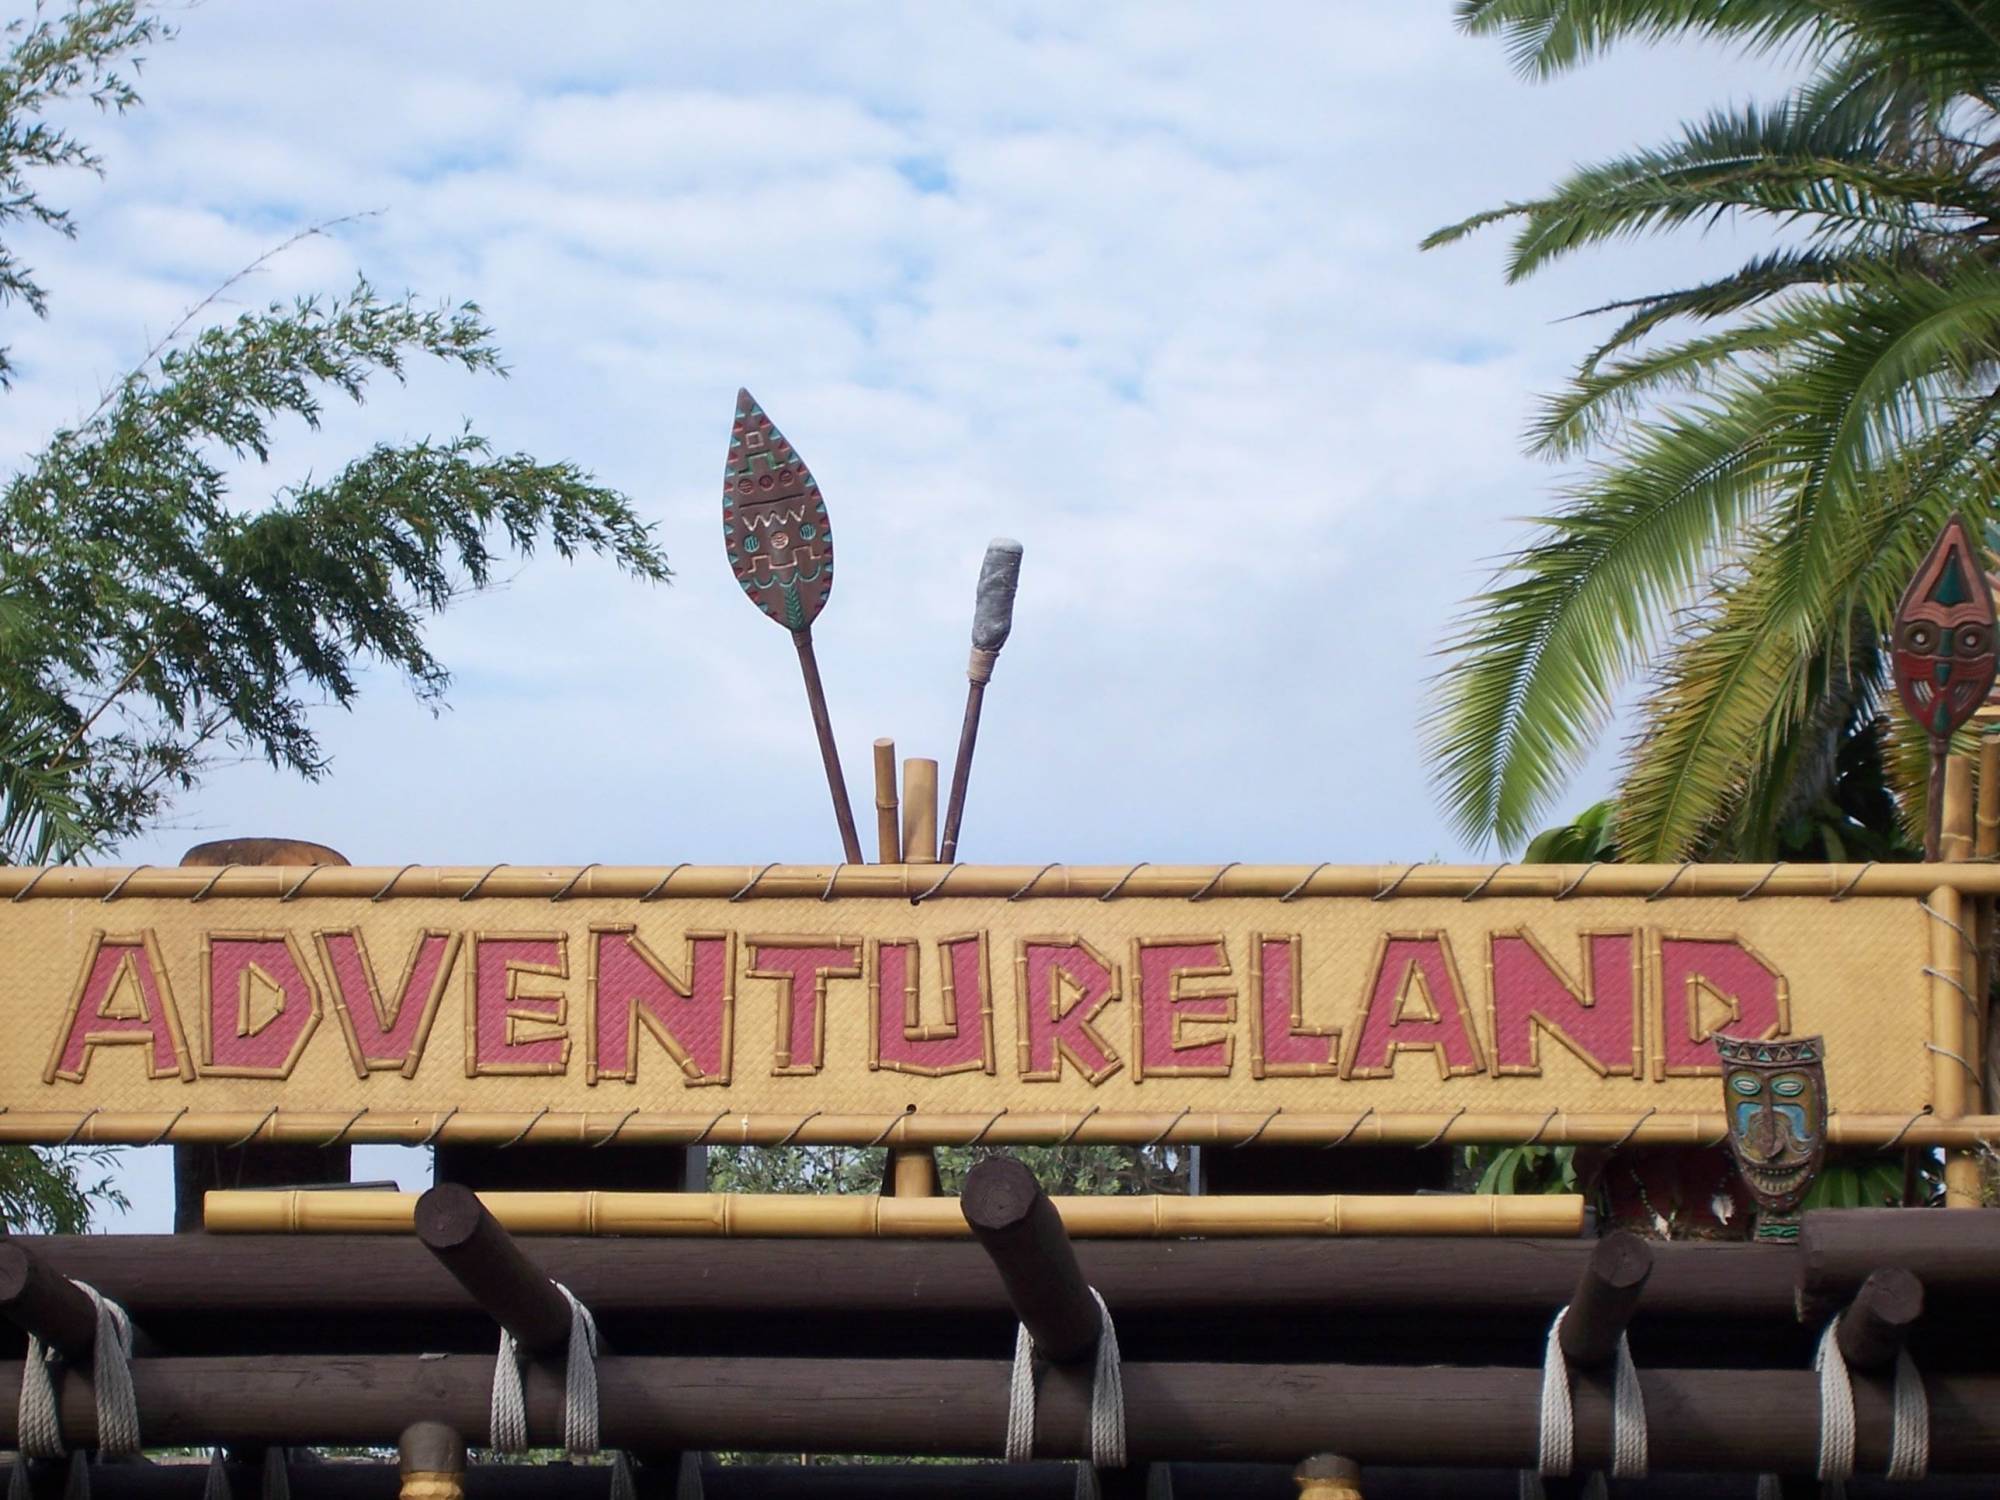 Adventureland Sign